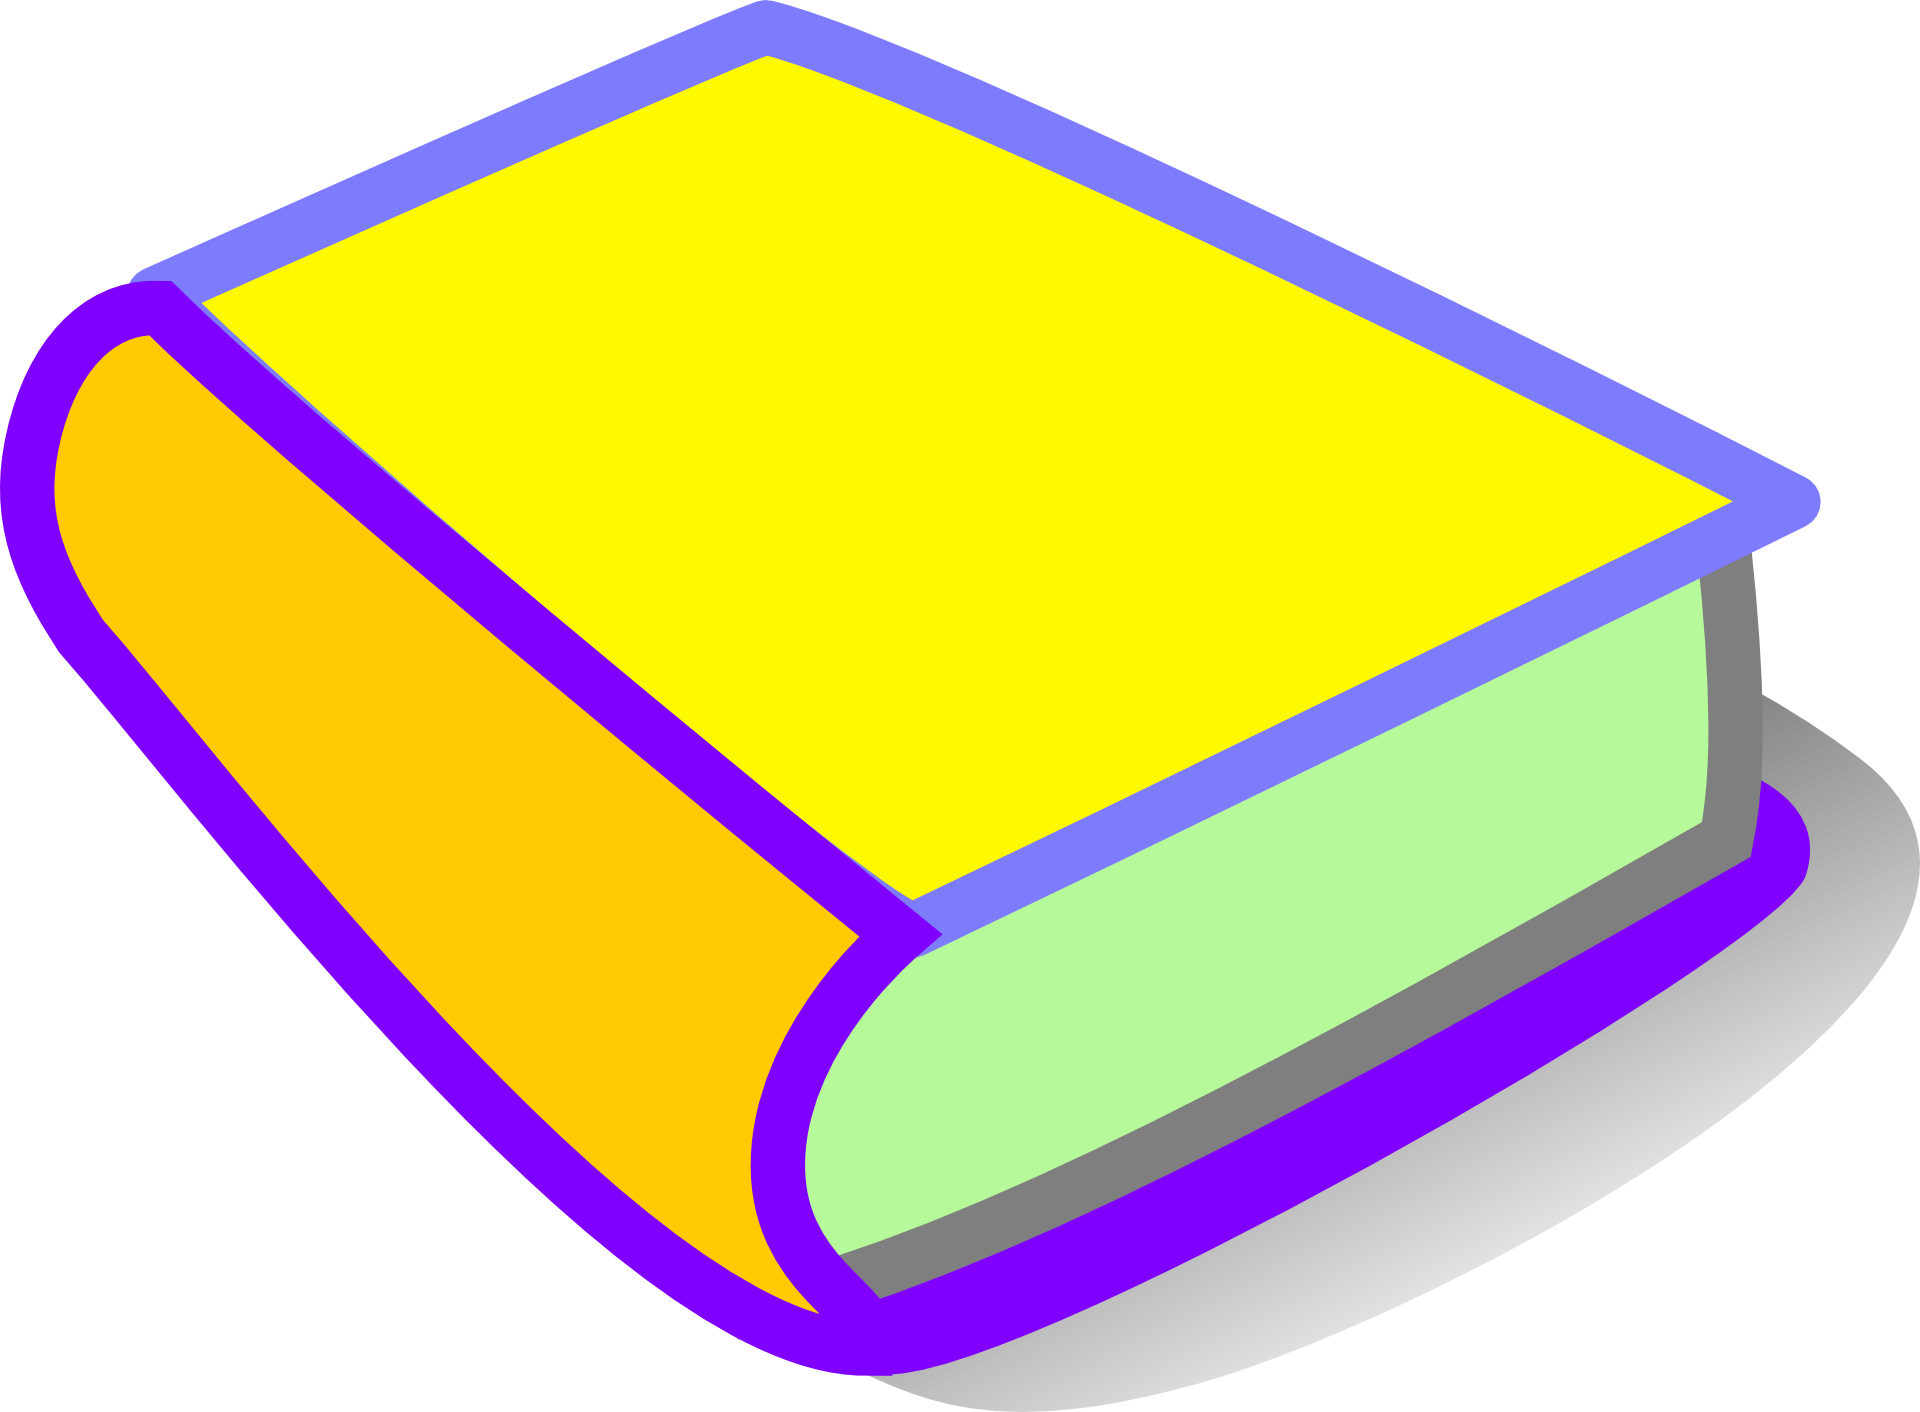 Цветные рисунки книг